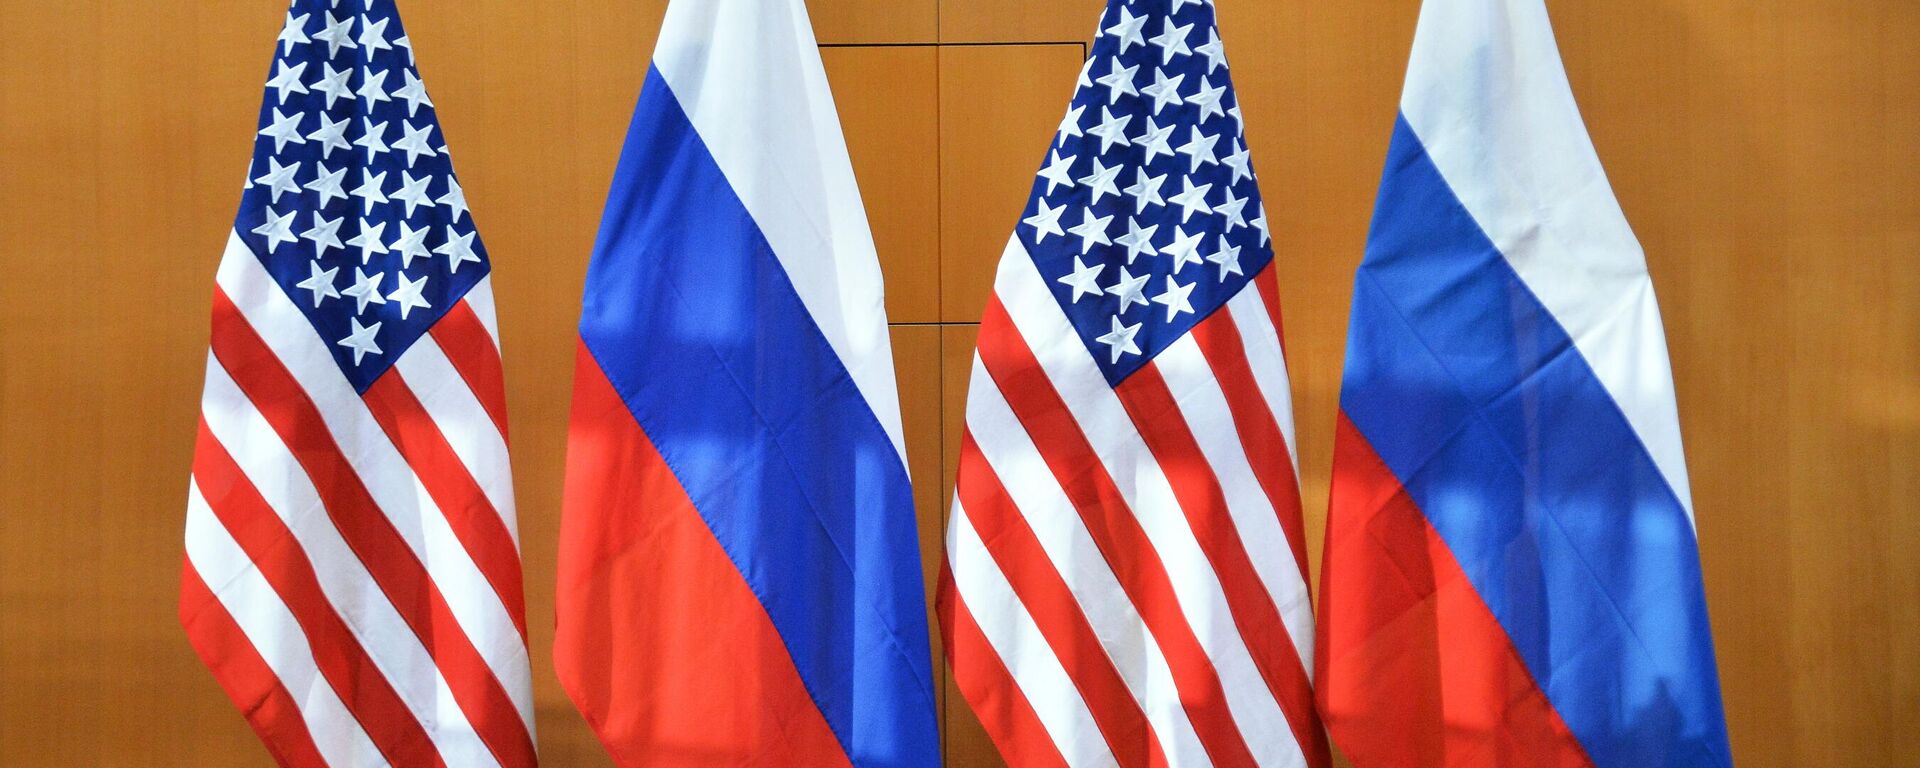 Em Genebra, na Suíça, as bandeiras dos EUA e da Rússia aparecem alinhadas durante encontro de representantes dos dois países em 10 de janeiro de 2022 - Sputnik Brasil, 1920, 17.04.2022